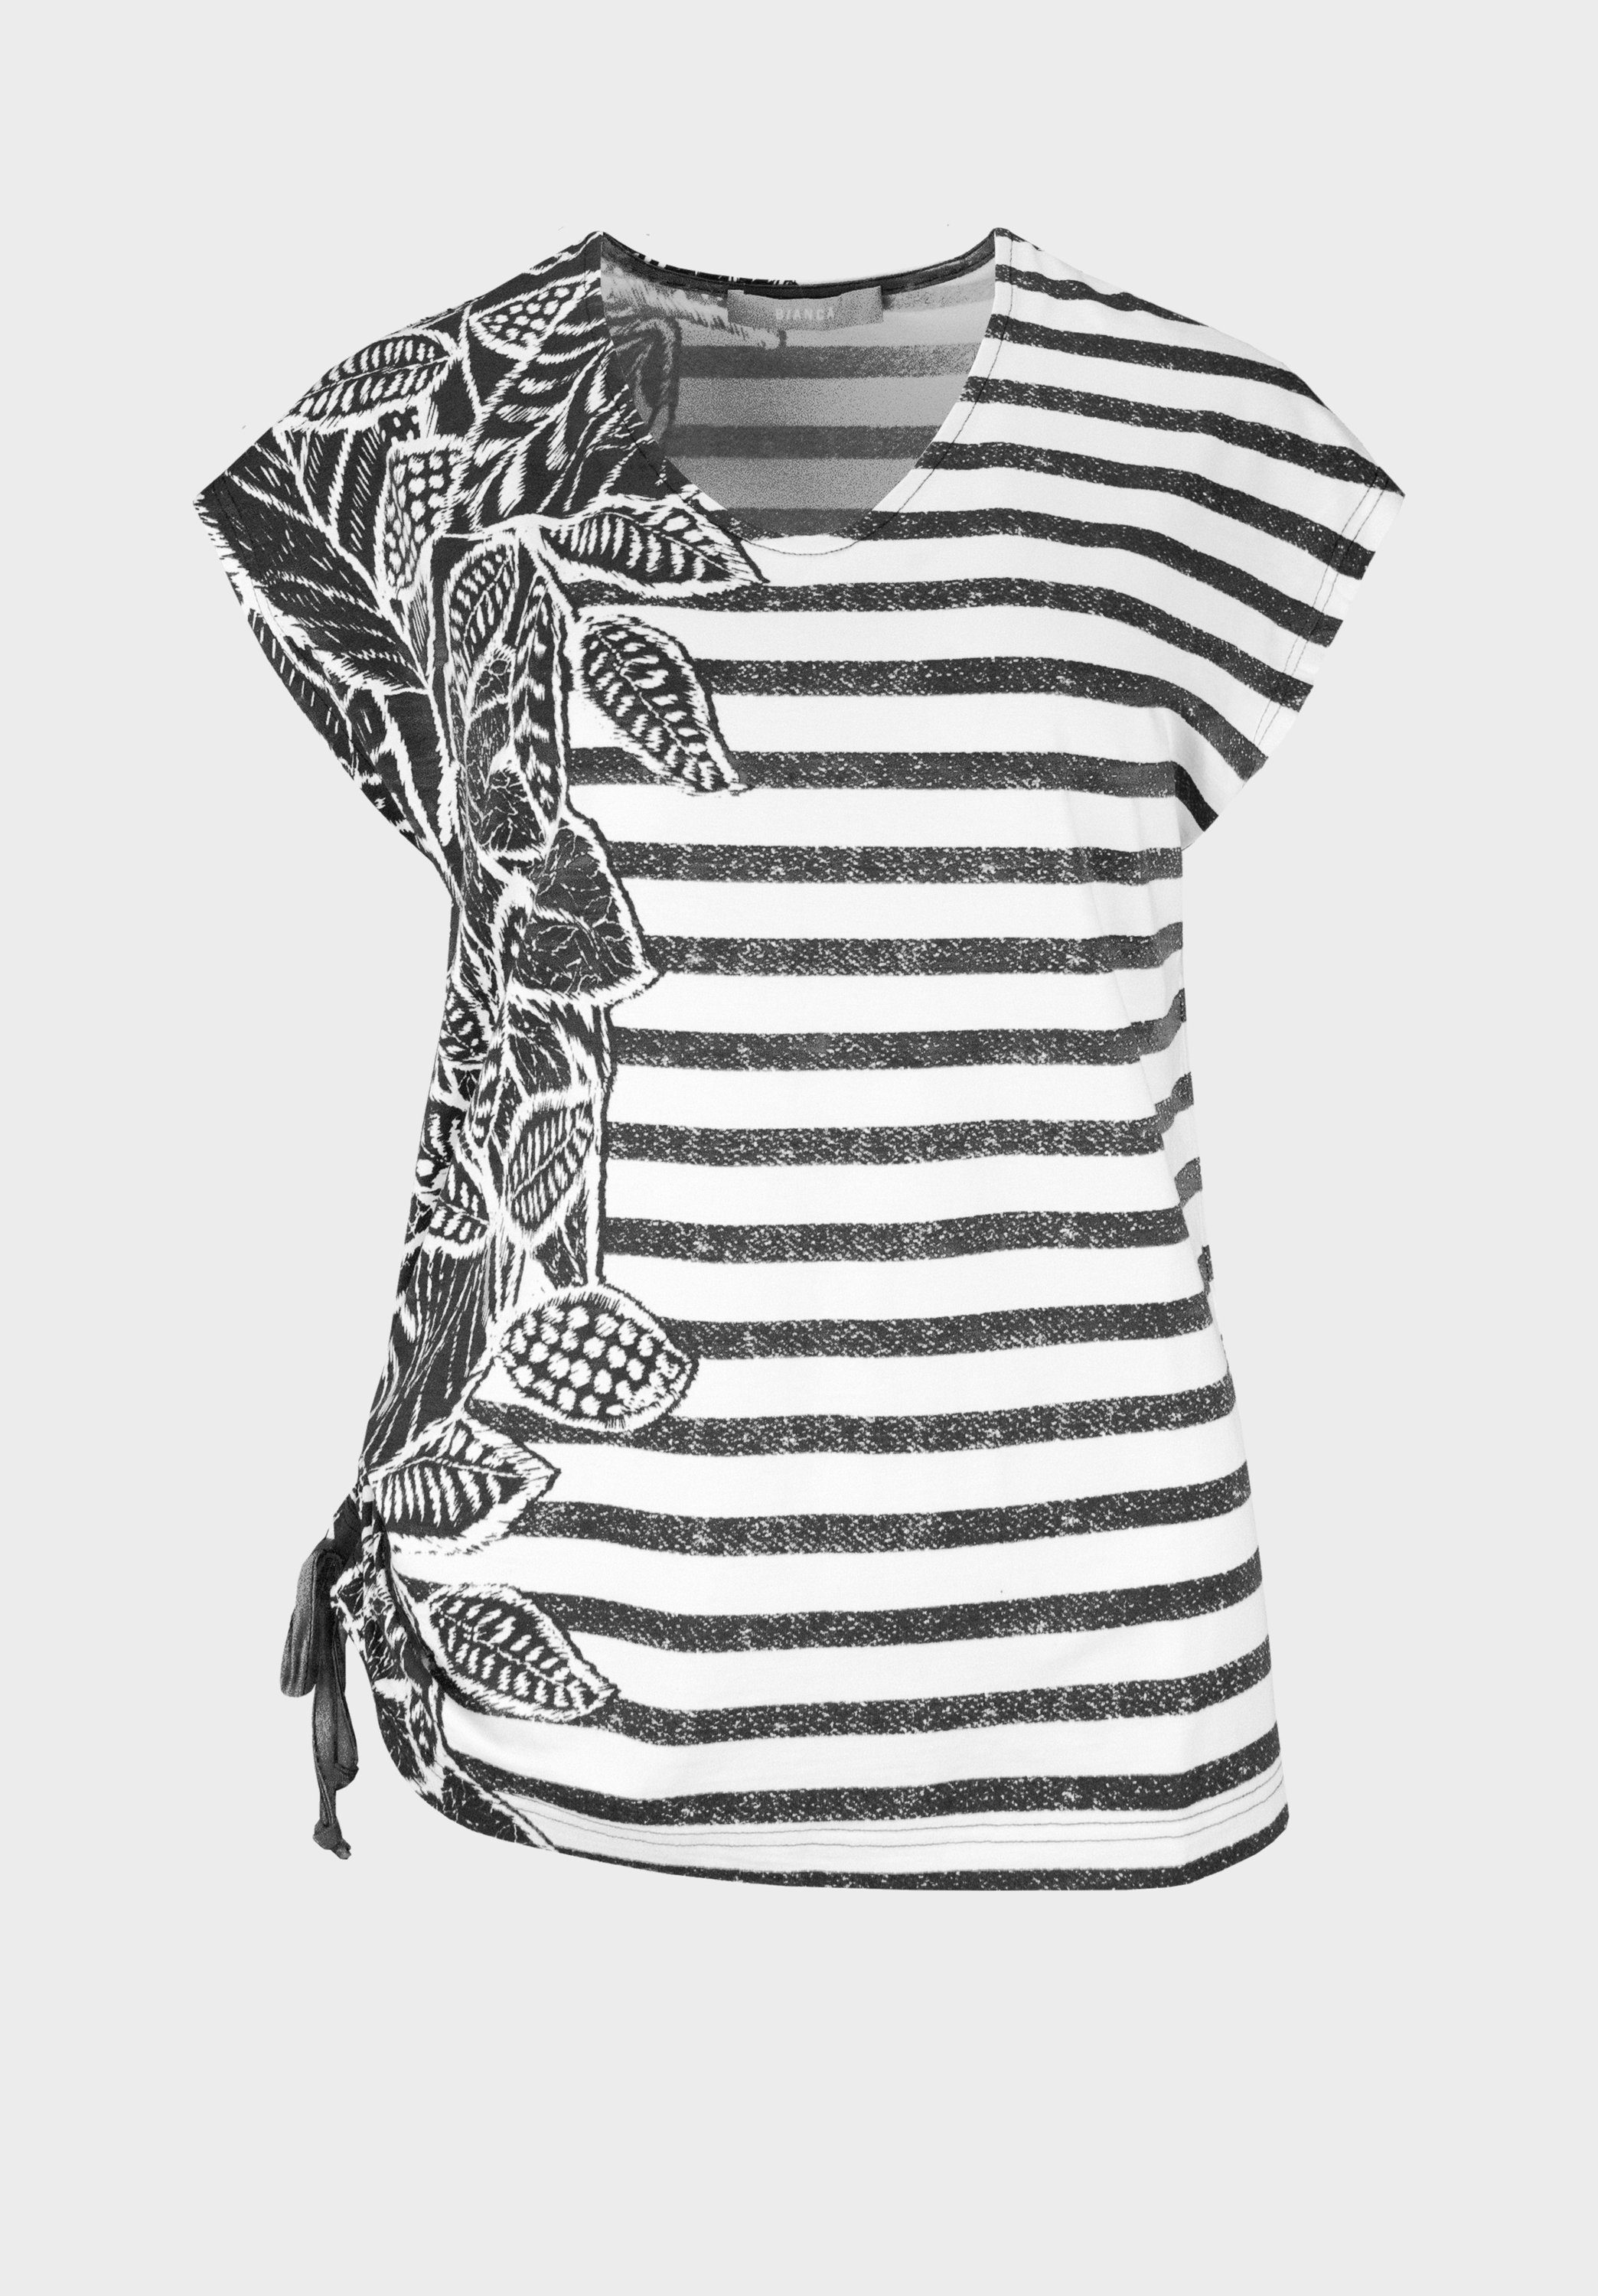 bianca Print-Shirt JULIE mit modernem Design aus Streifen und Palmen-Print